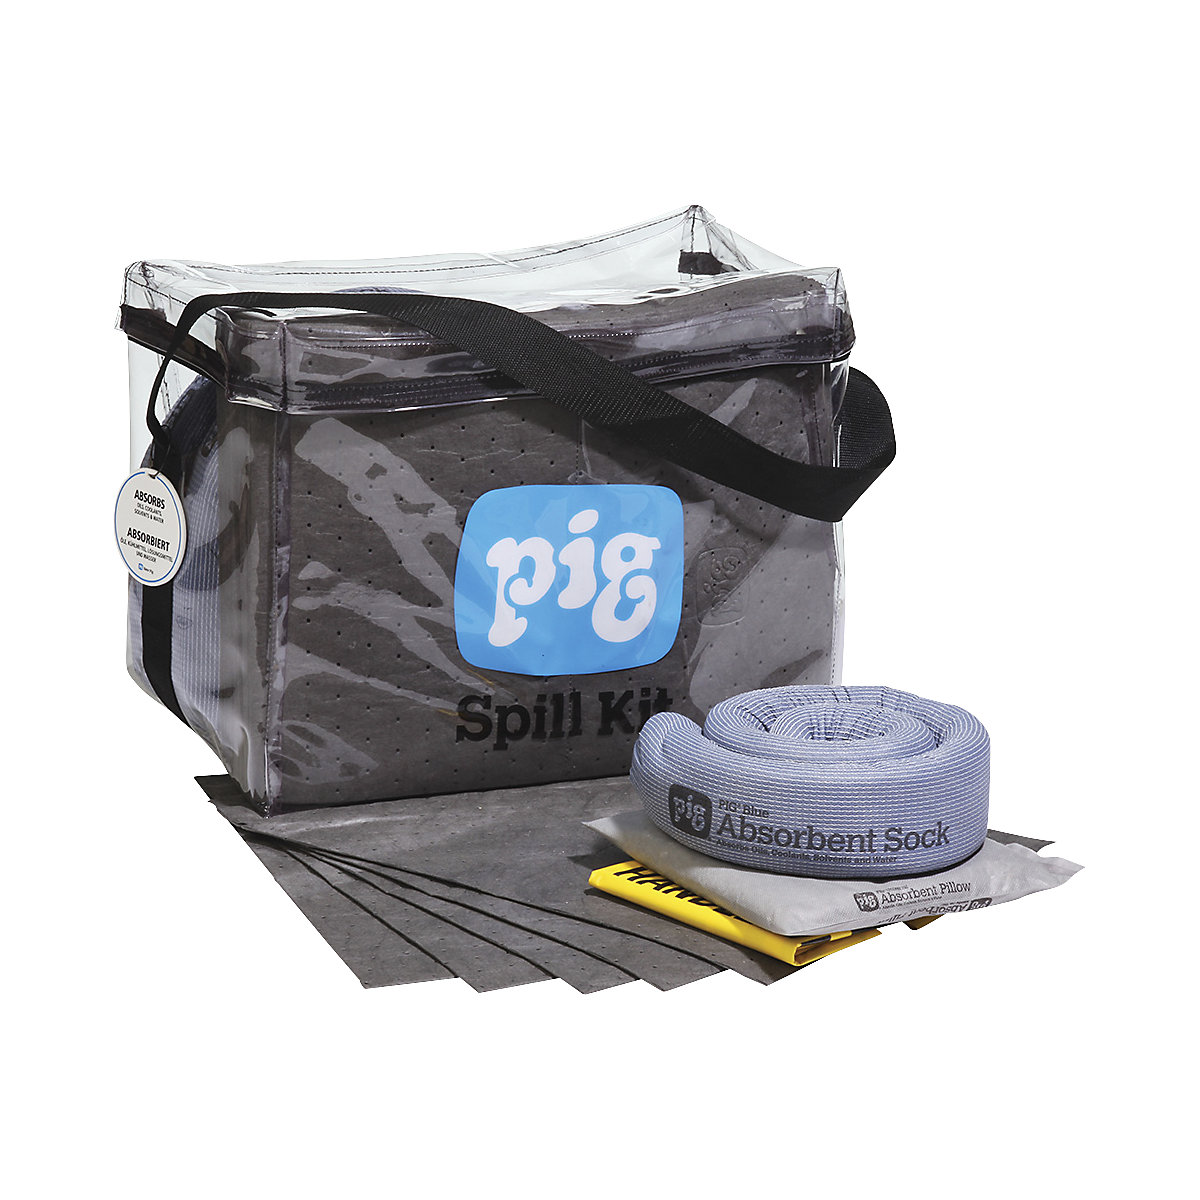 Kit d'urgence dans un sac transparent - PIG